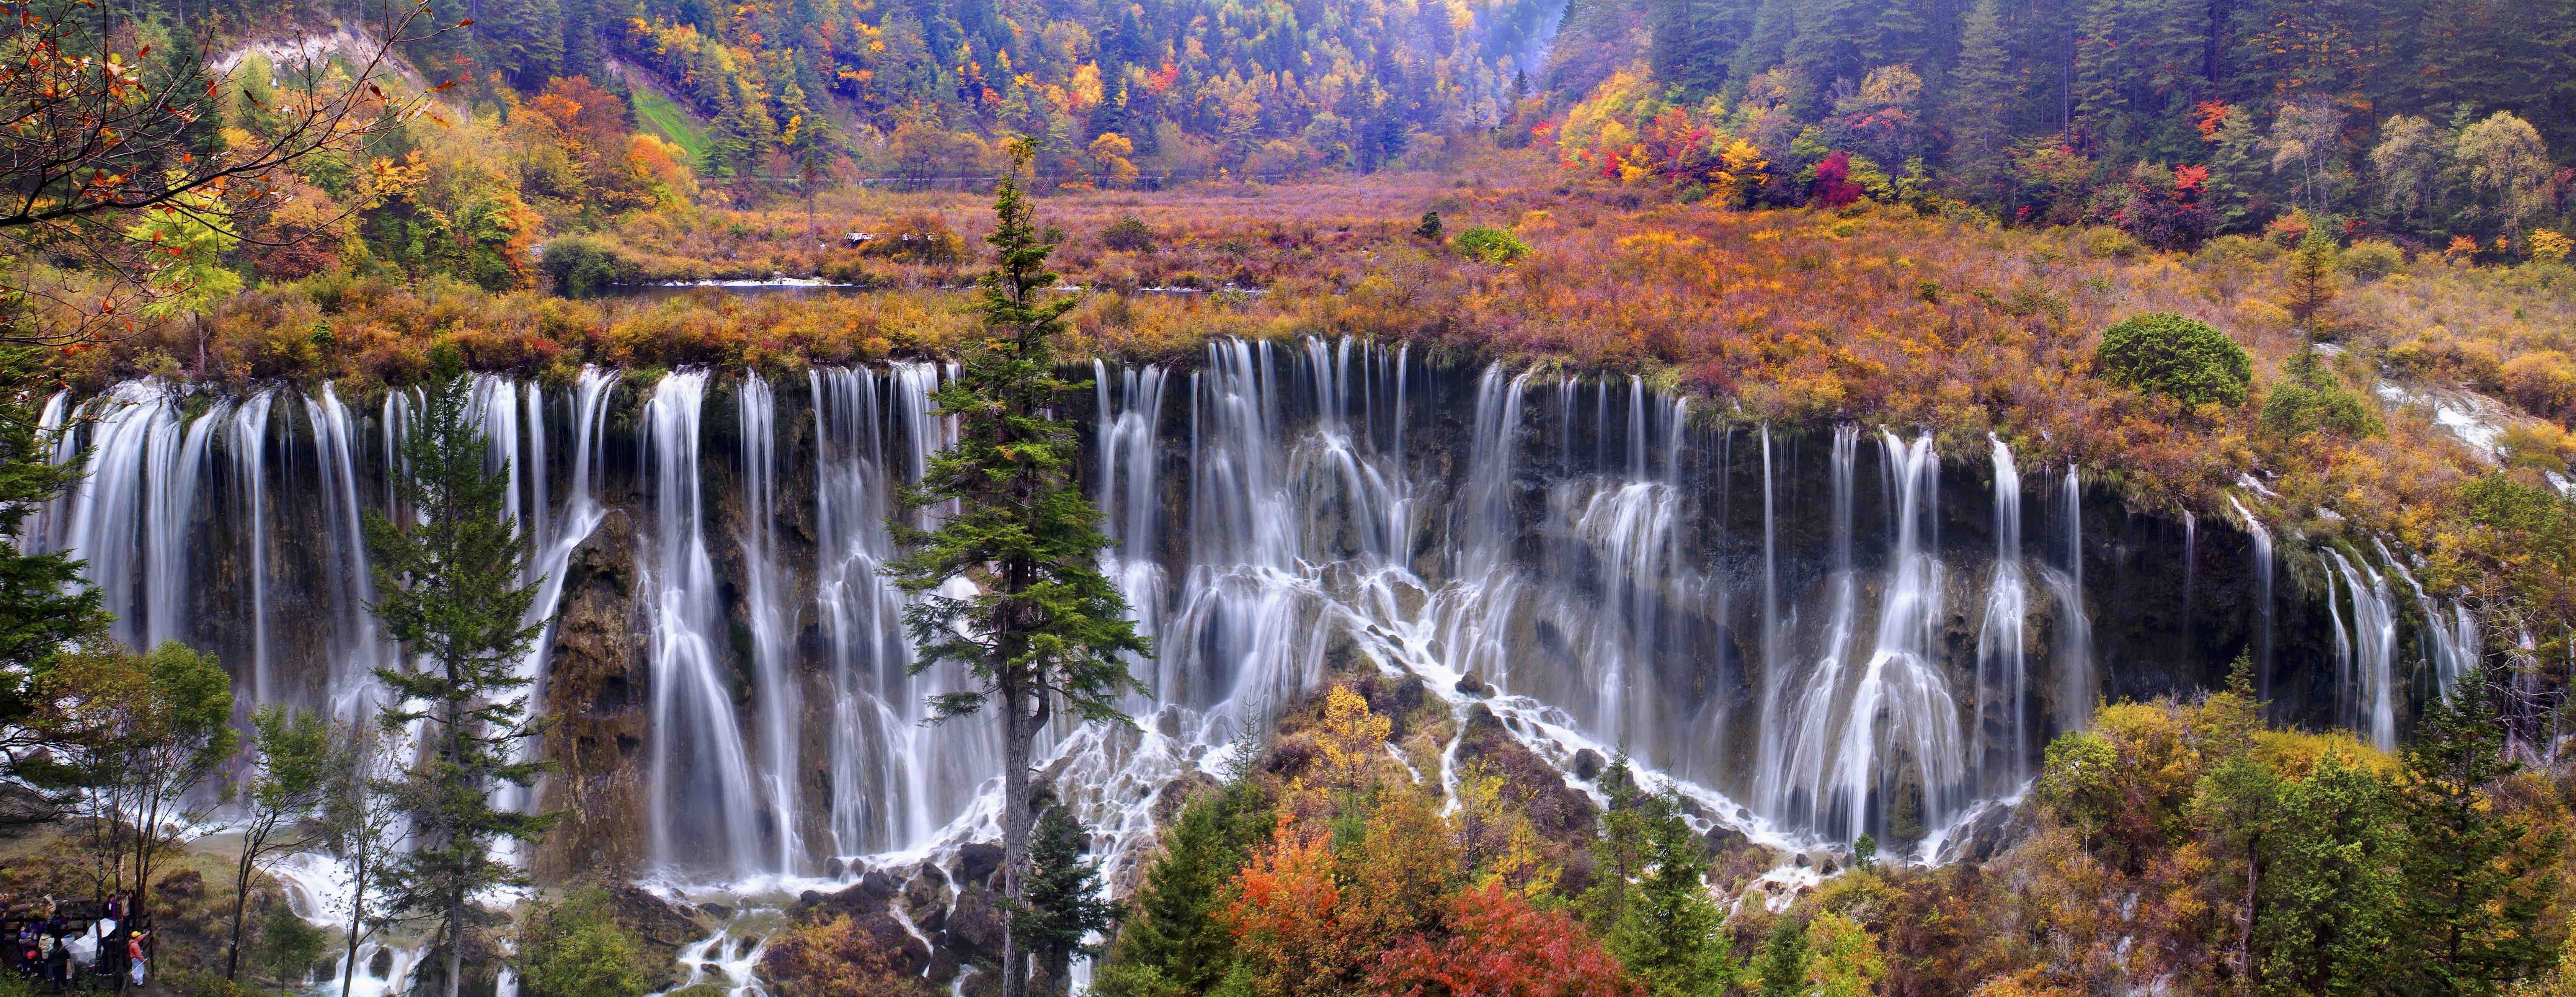 Jiuzhaigou National Park, China. Mountain lakes, National parks